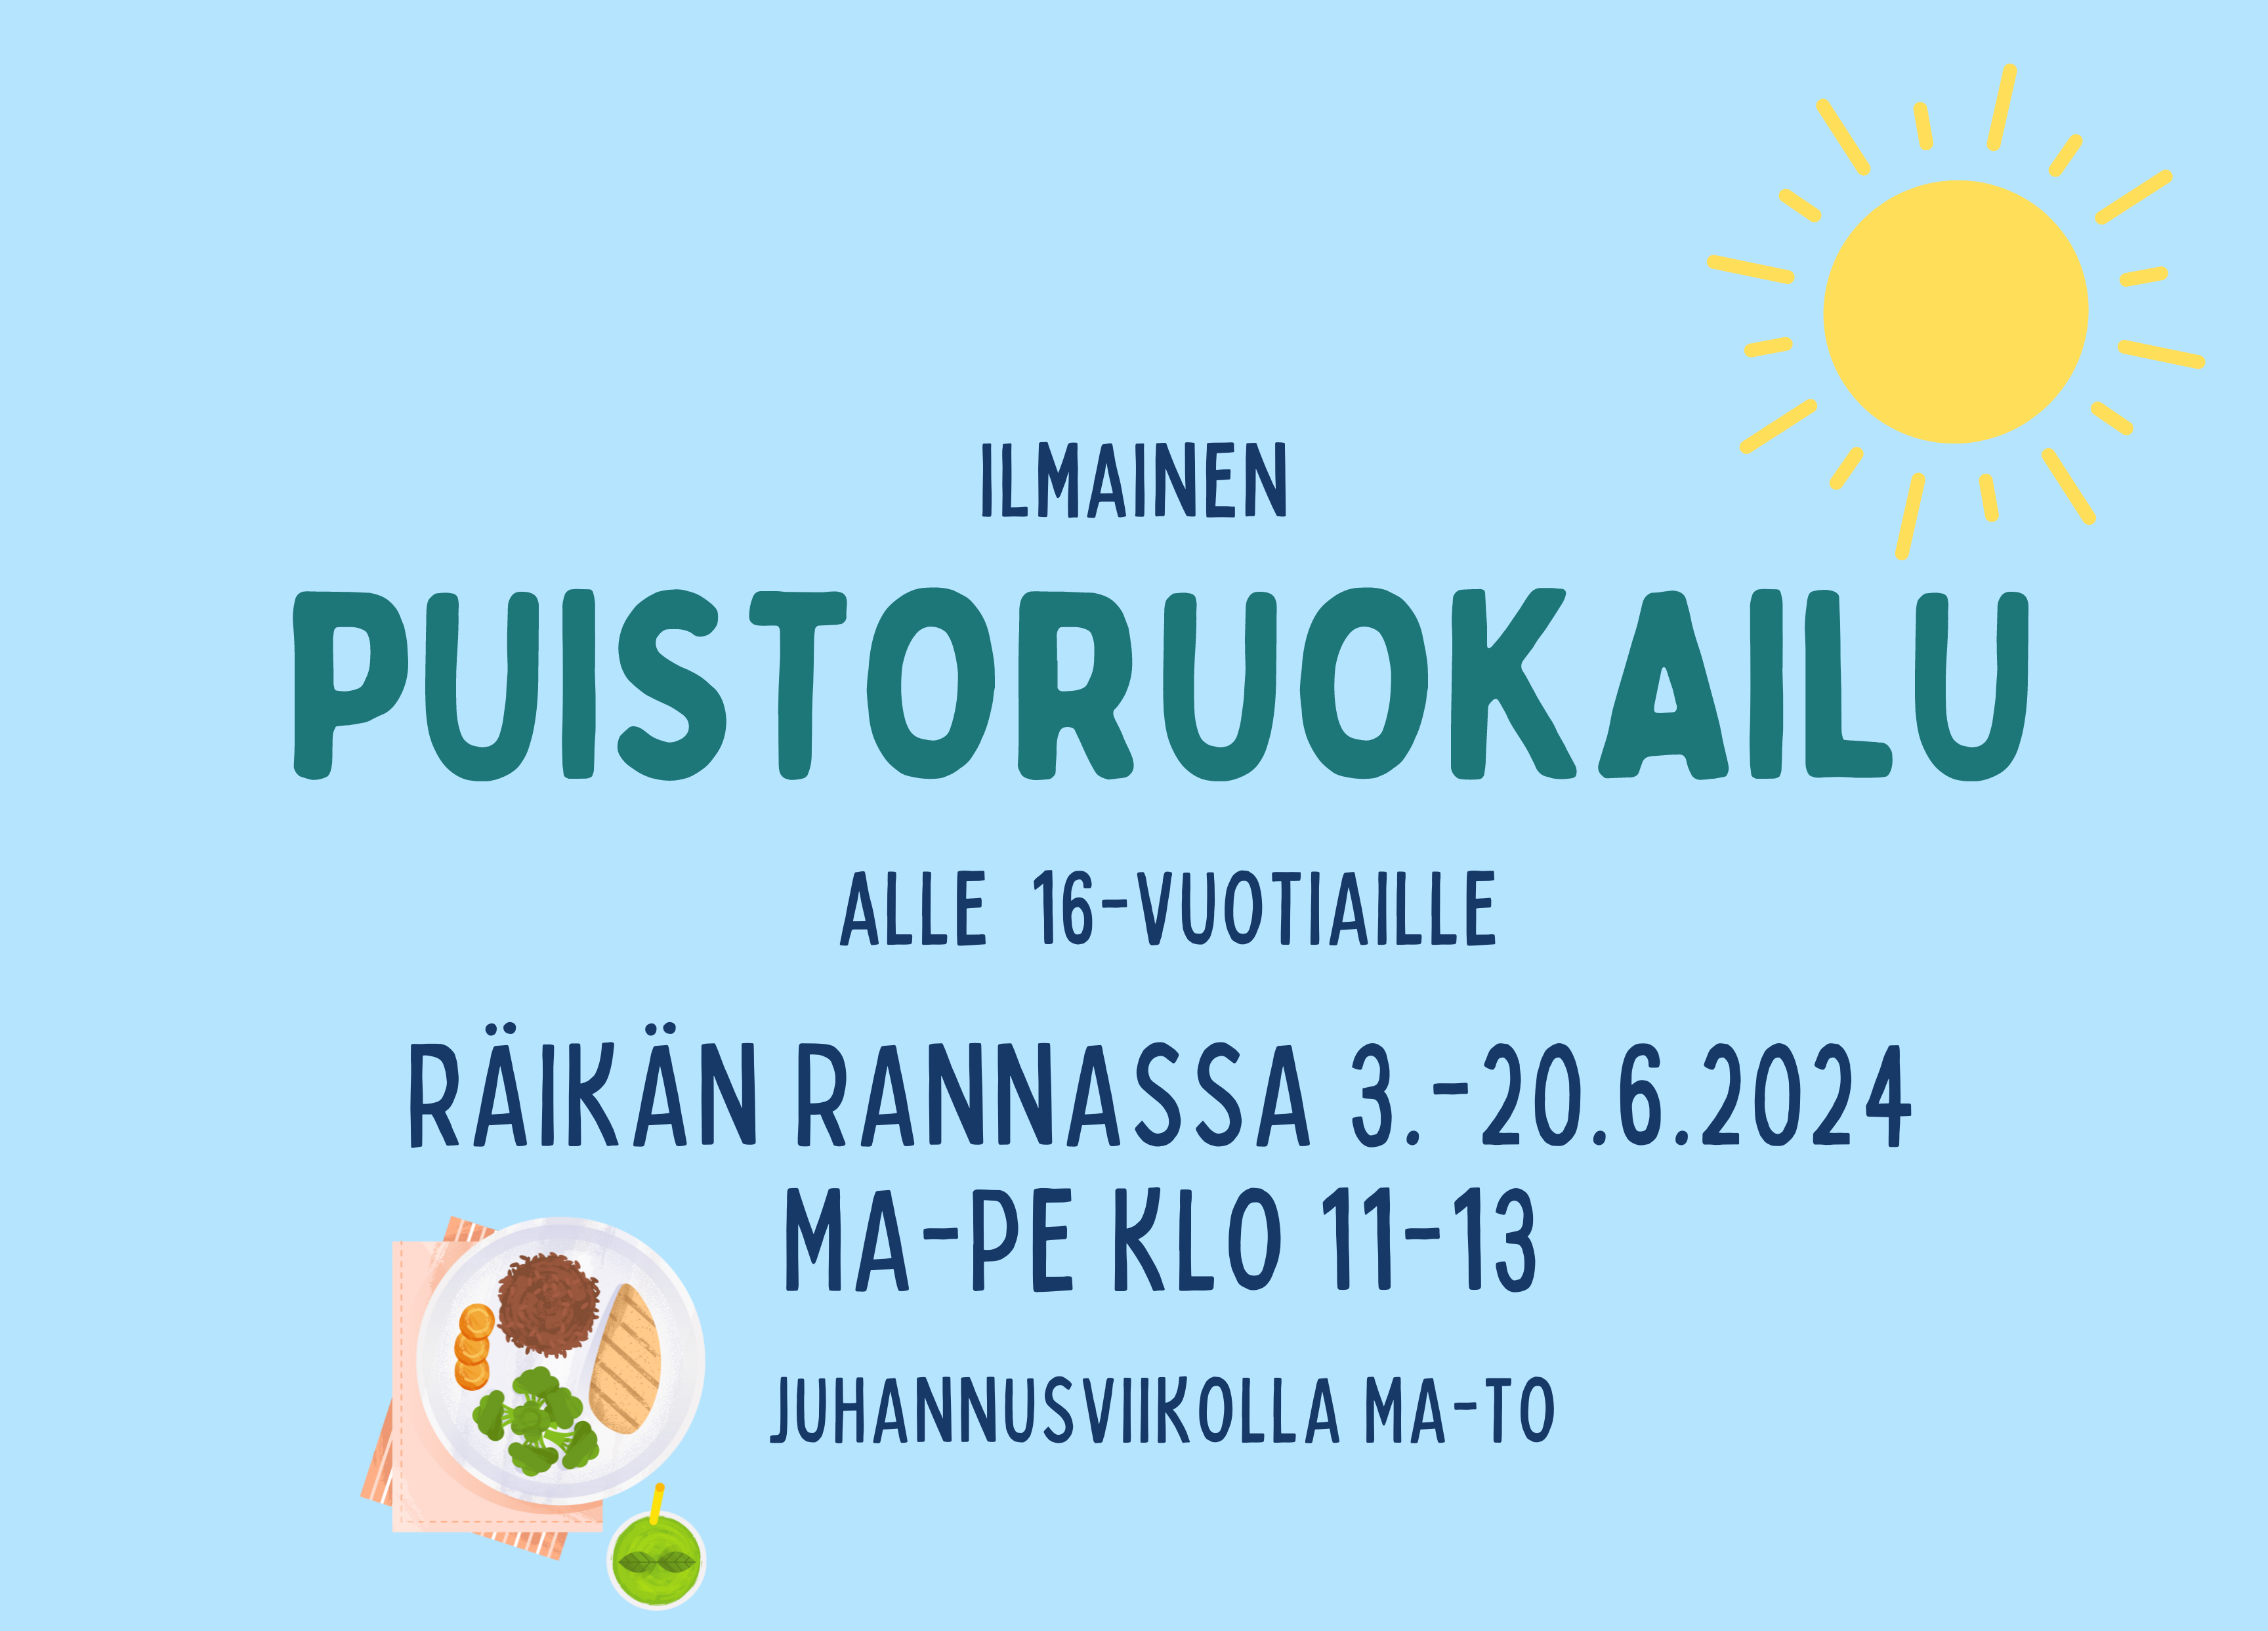 Puistoruokailu mainos, teksti: Ilmainen puistoruokailu alle 16-vuotiaille Räikän rannassa 3.-20.6.2024 ma-pe klo 11-13, juhannusviikolla ma-to.